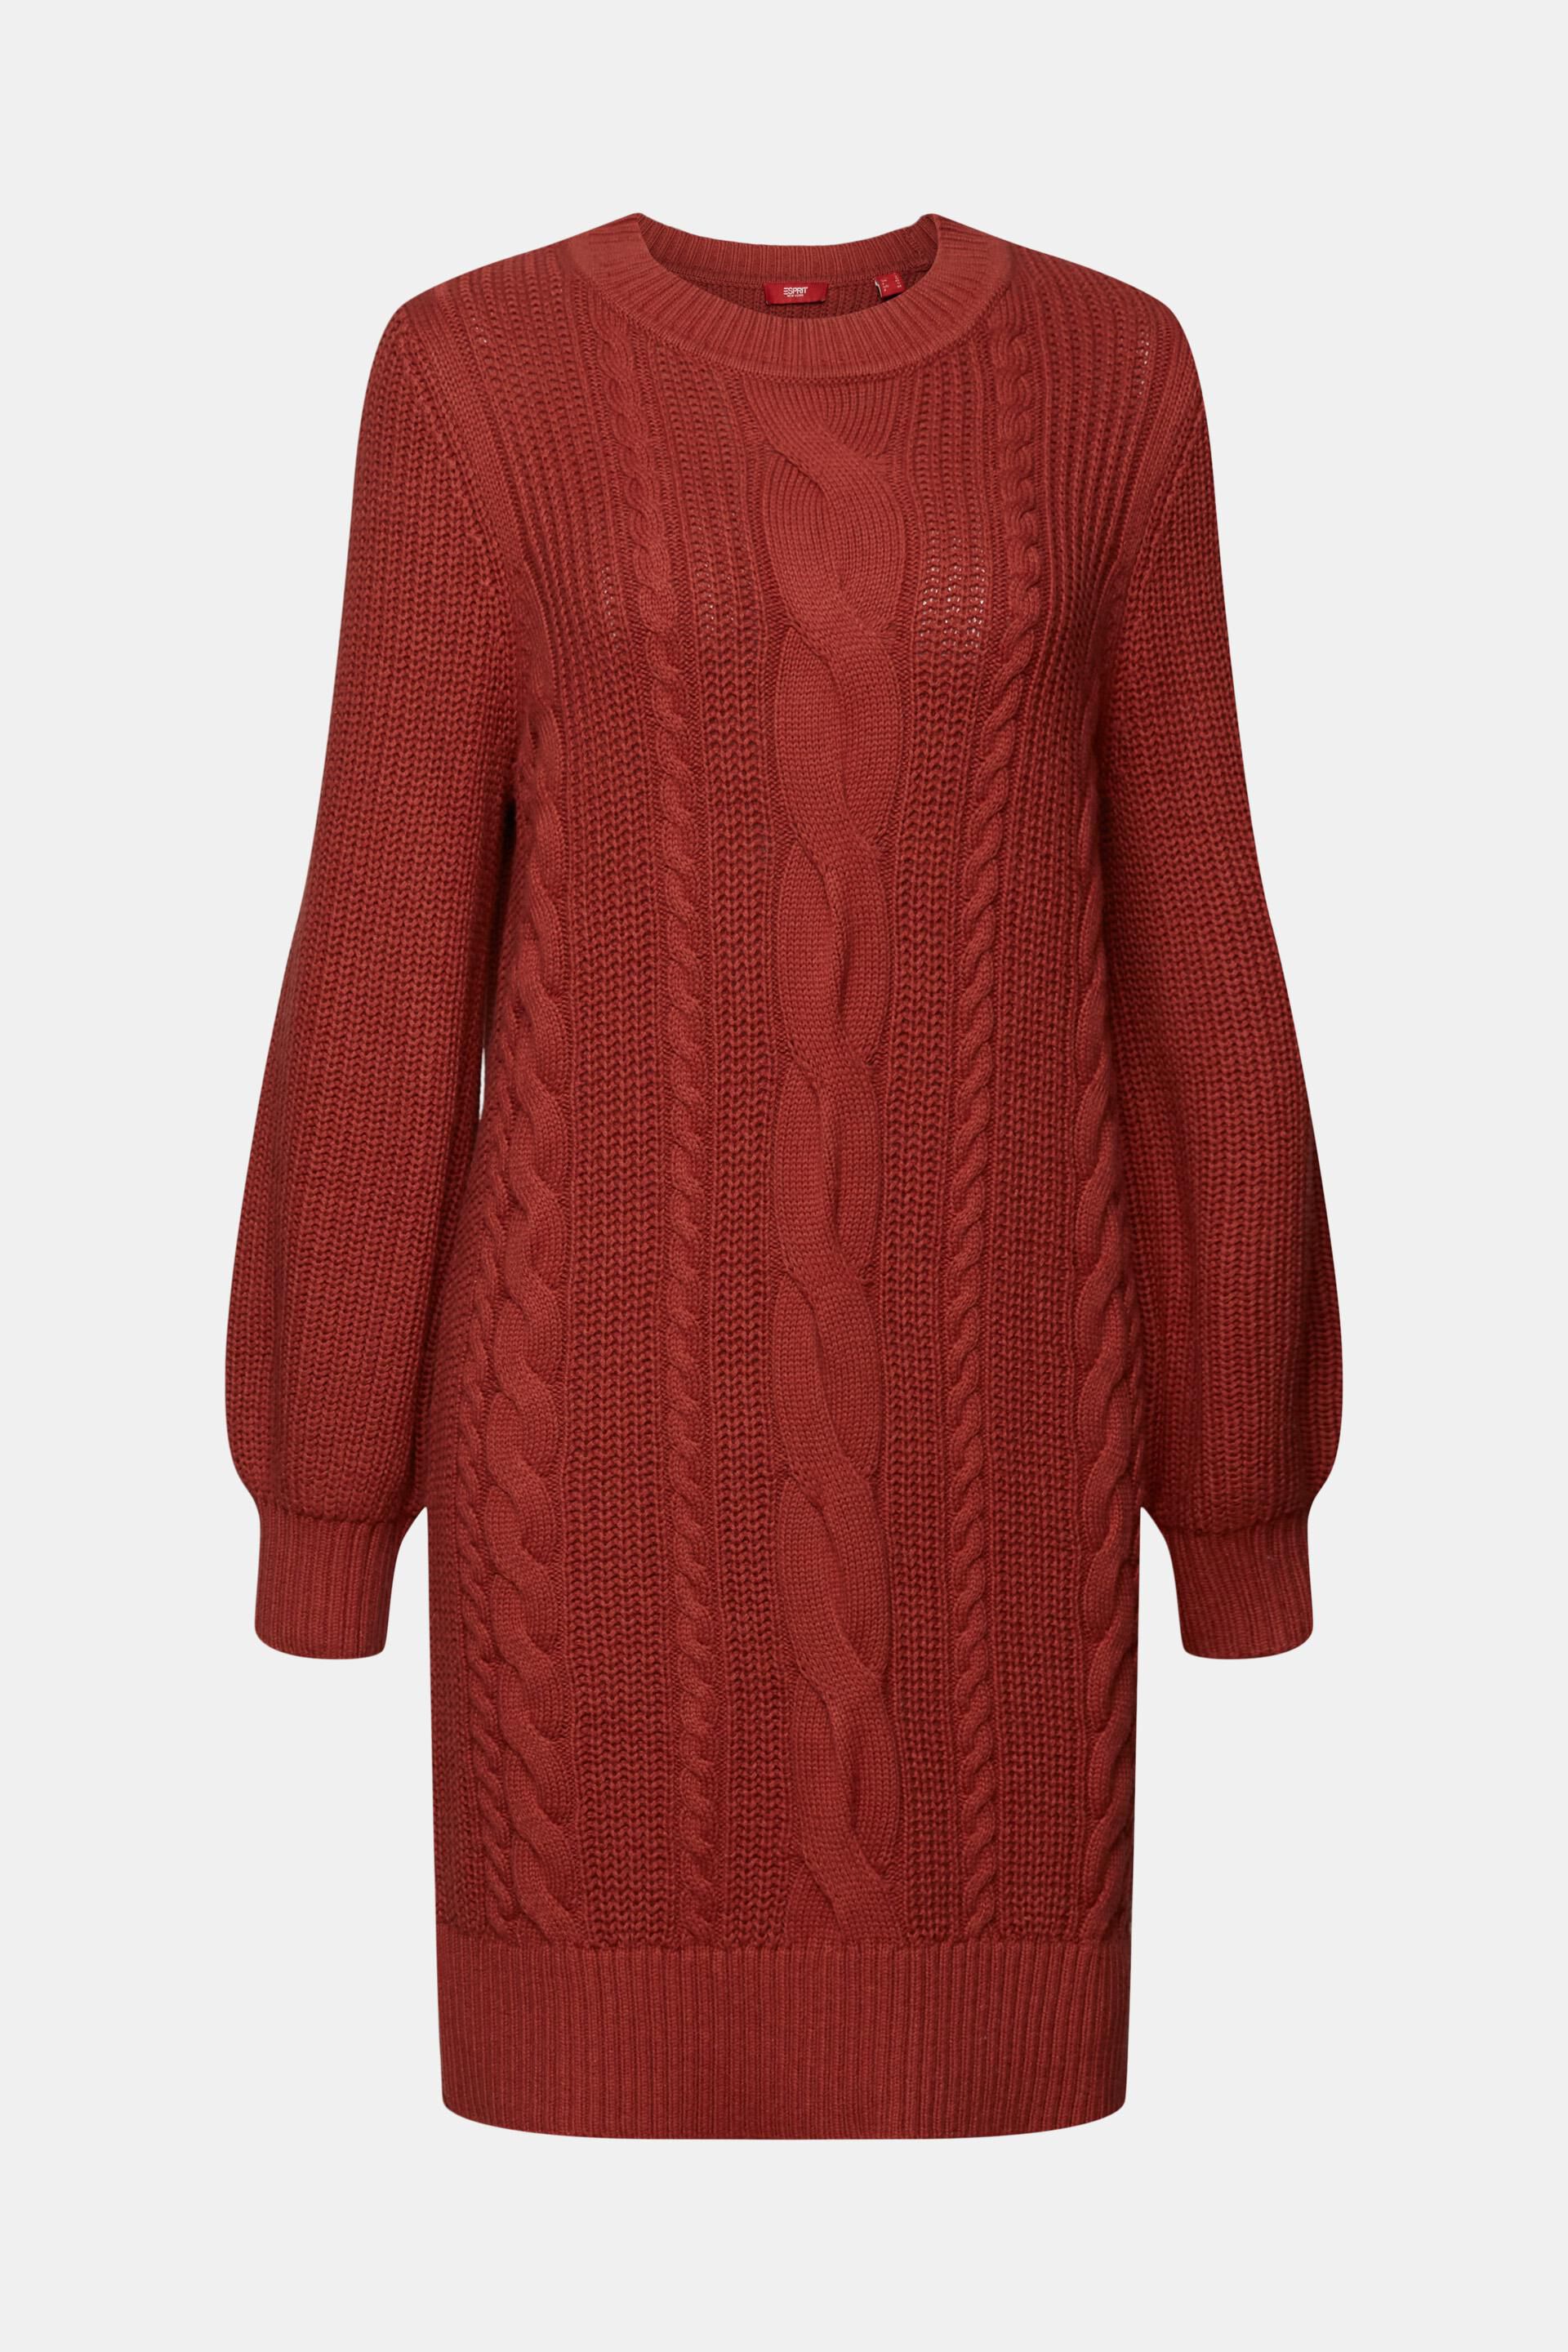 Esprit Damen Pulloverkleid aus mit Zopfmuster Wollmischung